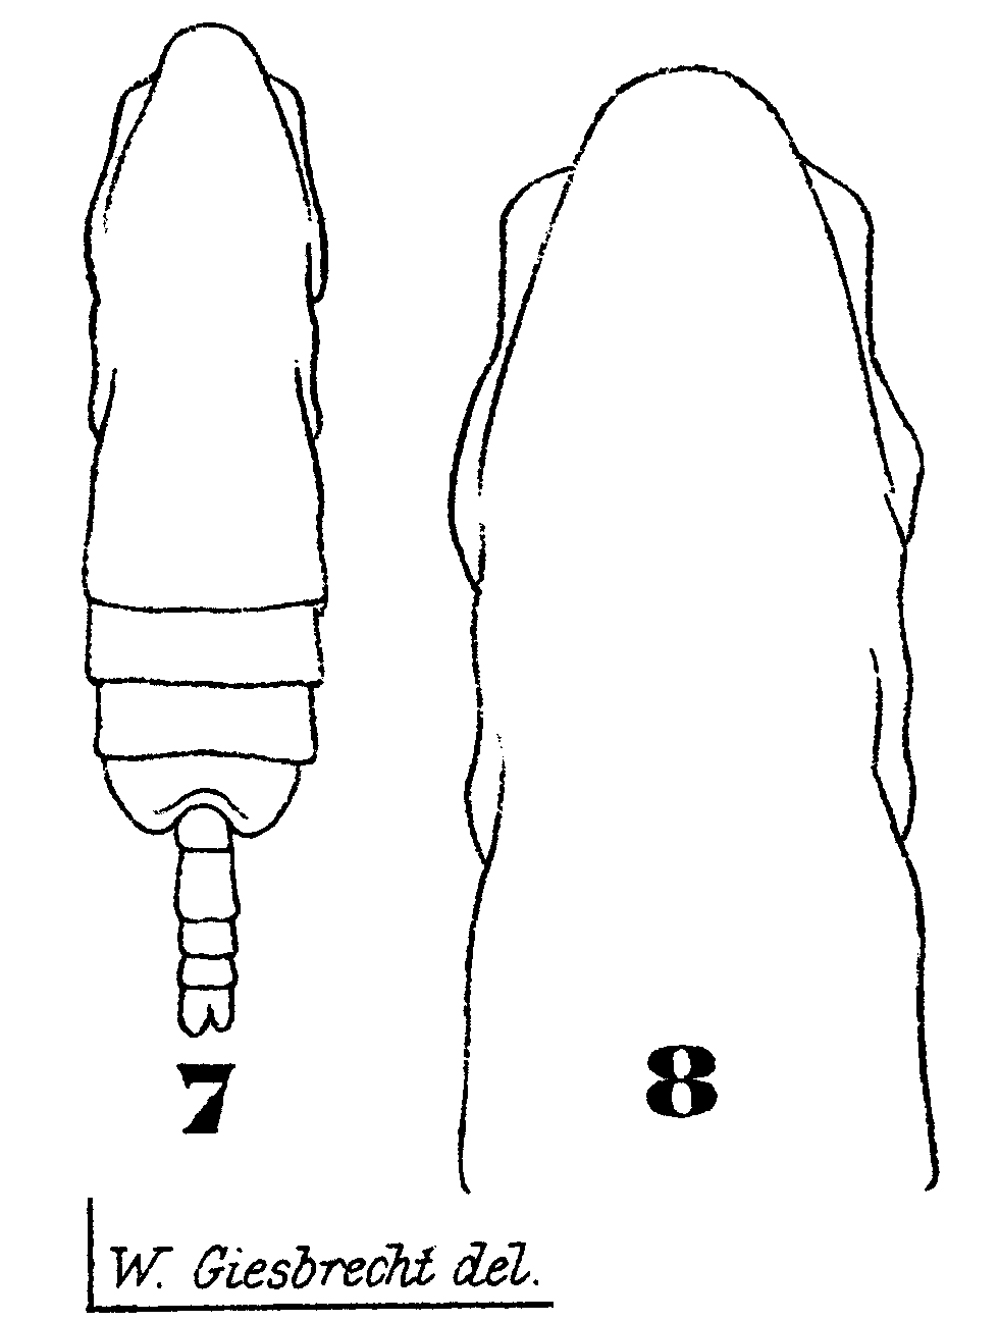 Espèce Subeucalanus pileatus - Planche 14 de figures morphologiques